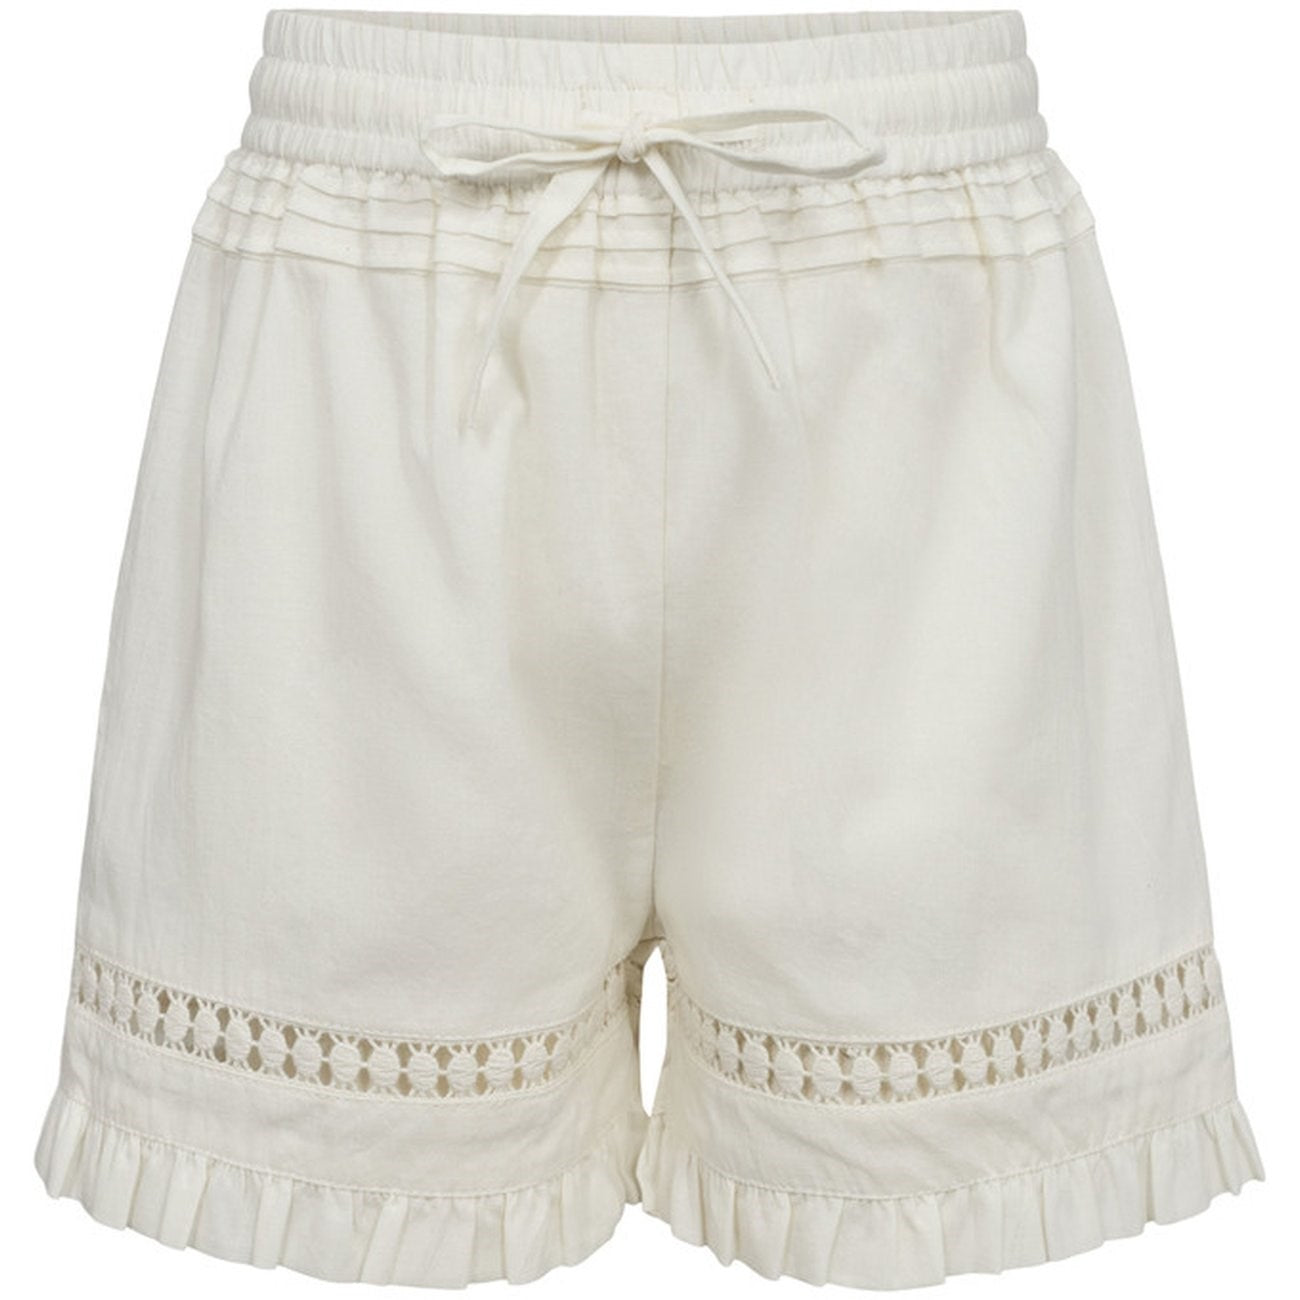 Sofie Schnoor Antique White Shorts